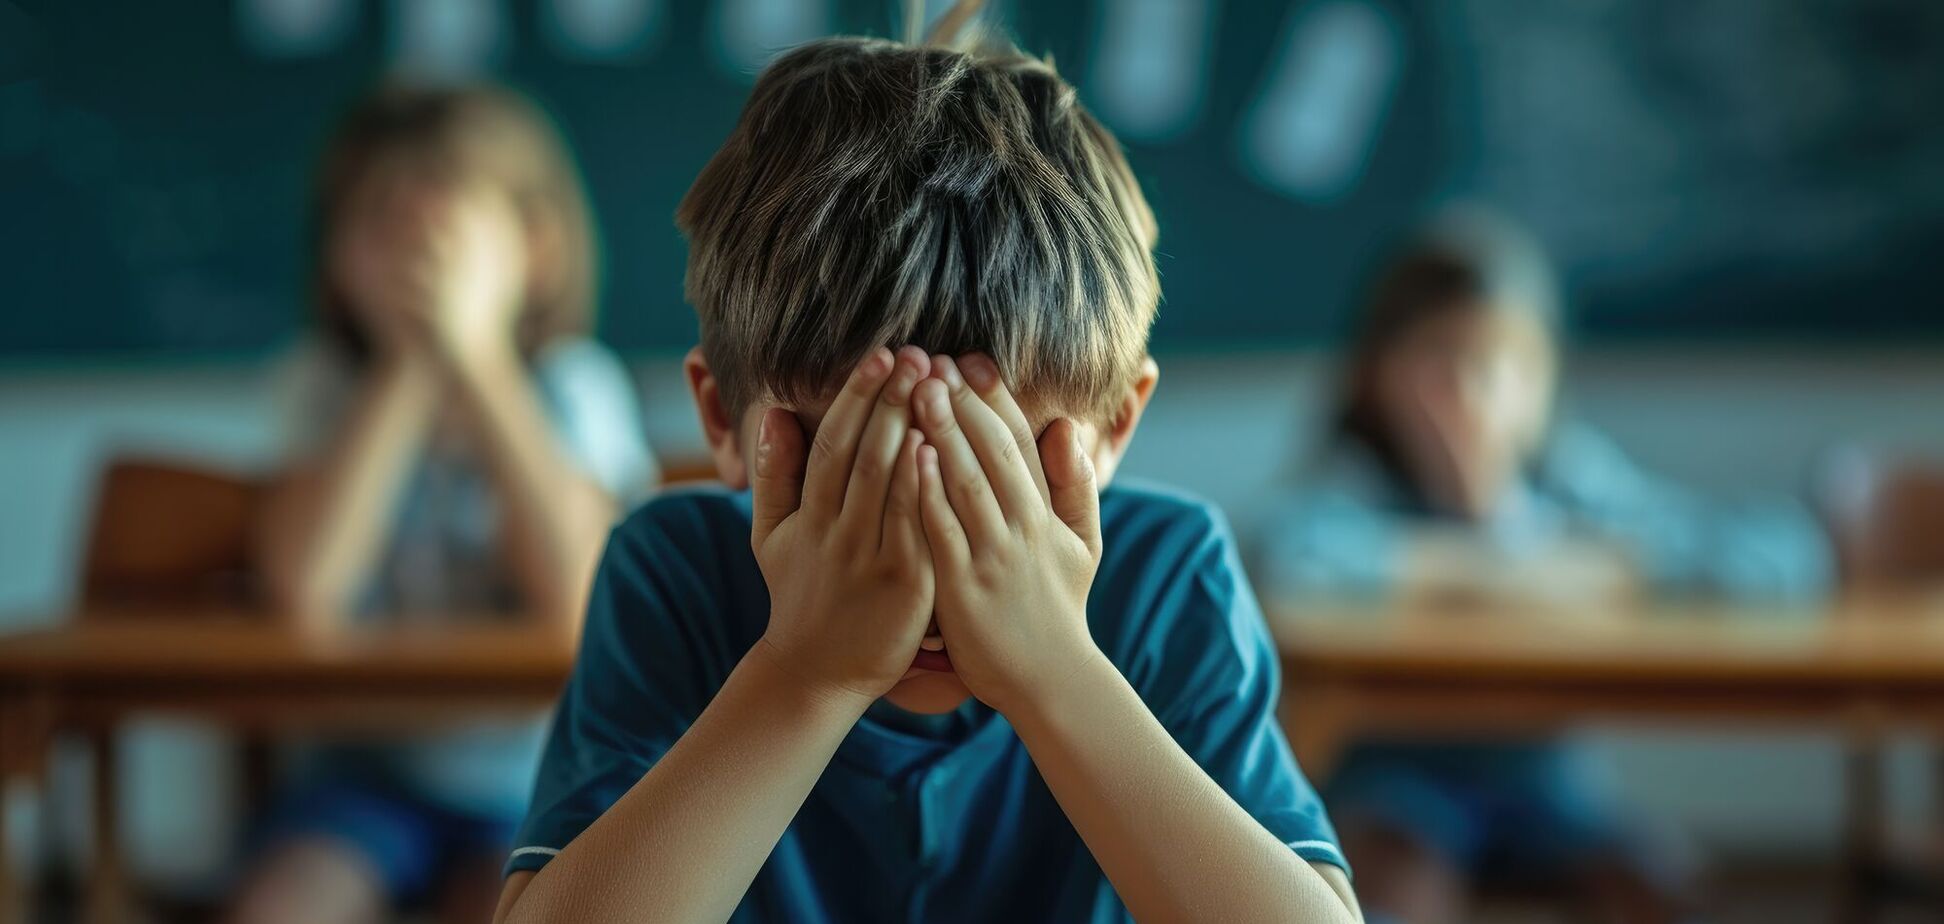 Вчителі несвідомо провокують це самі: психологиня пояснила, чому одні діти булять інших 